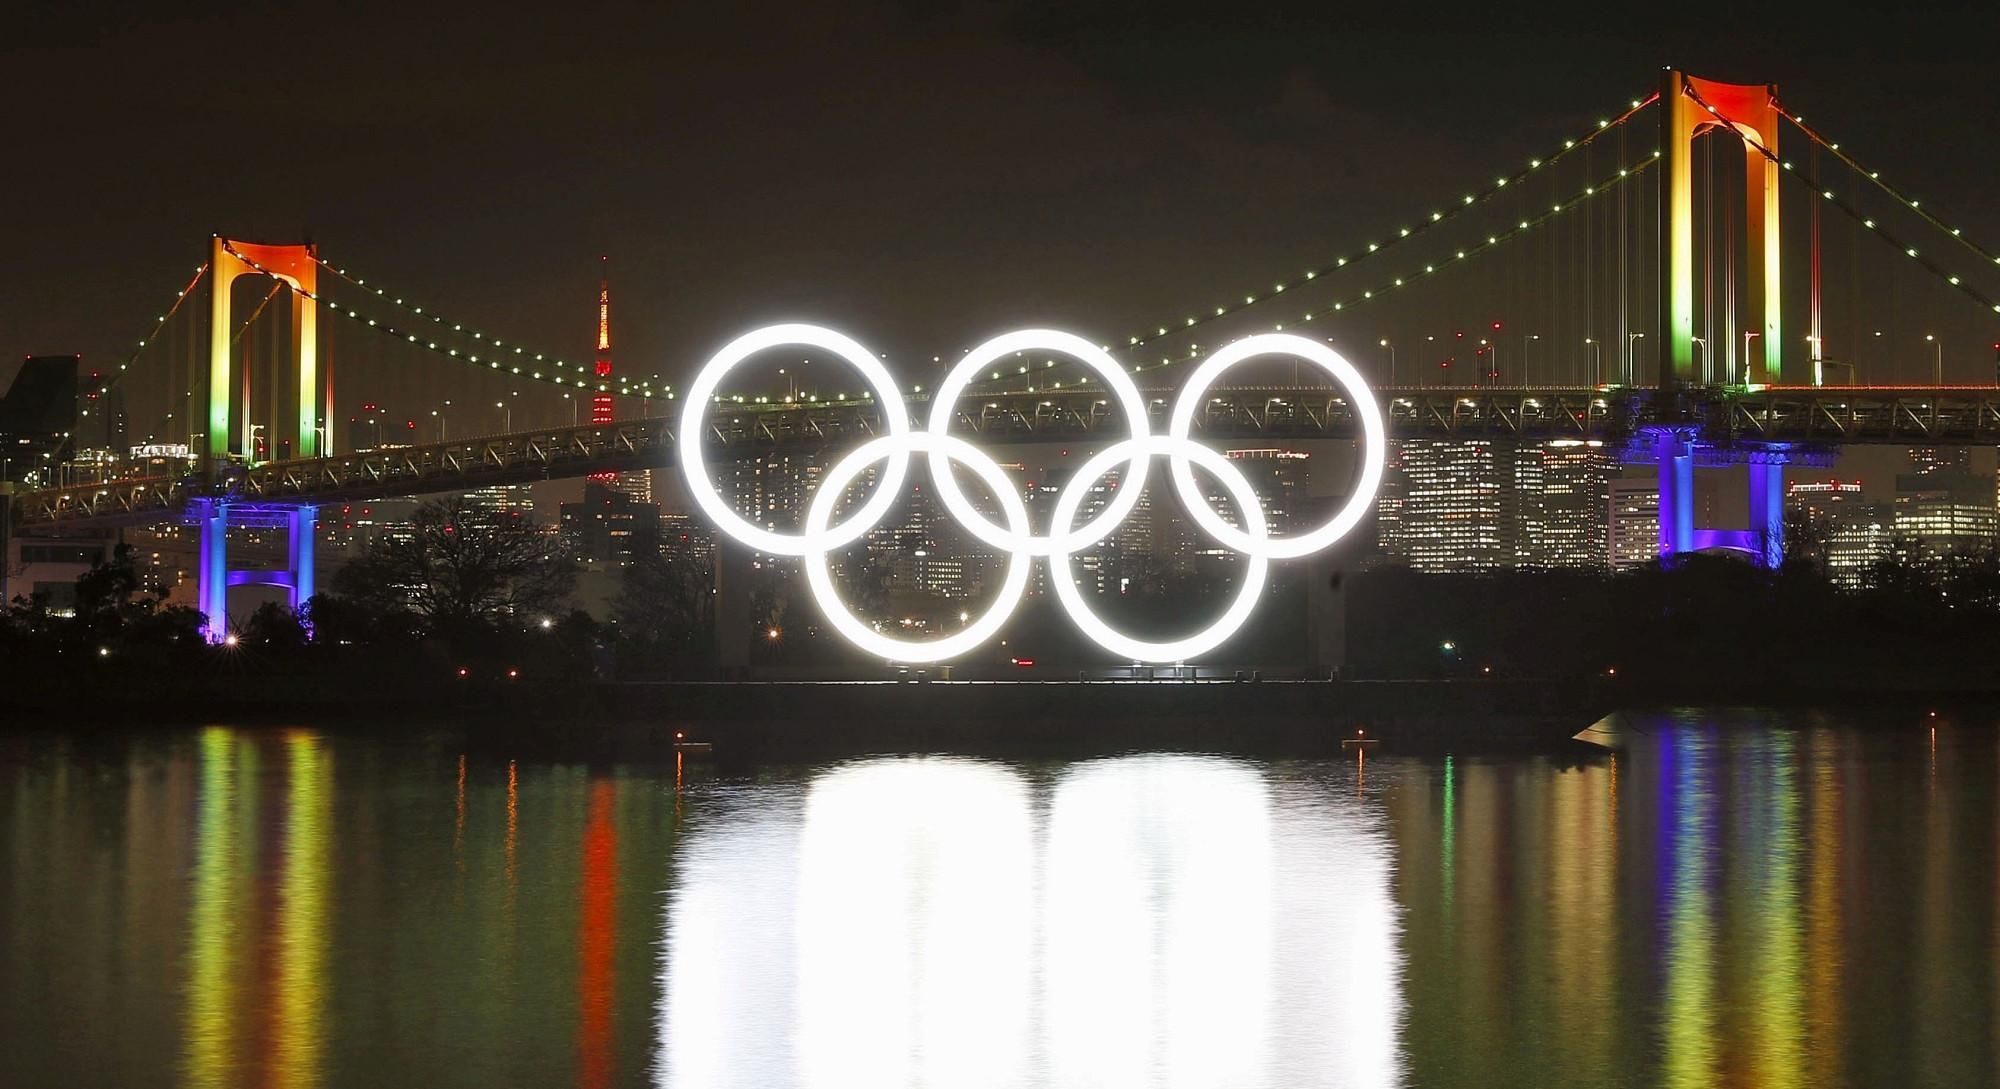 МОК пока не намерен принимать радикальные решения по Олимпиаде-2020